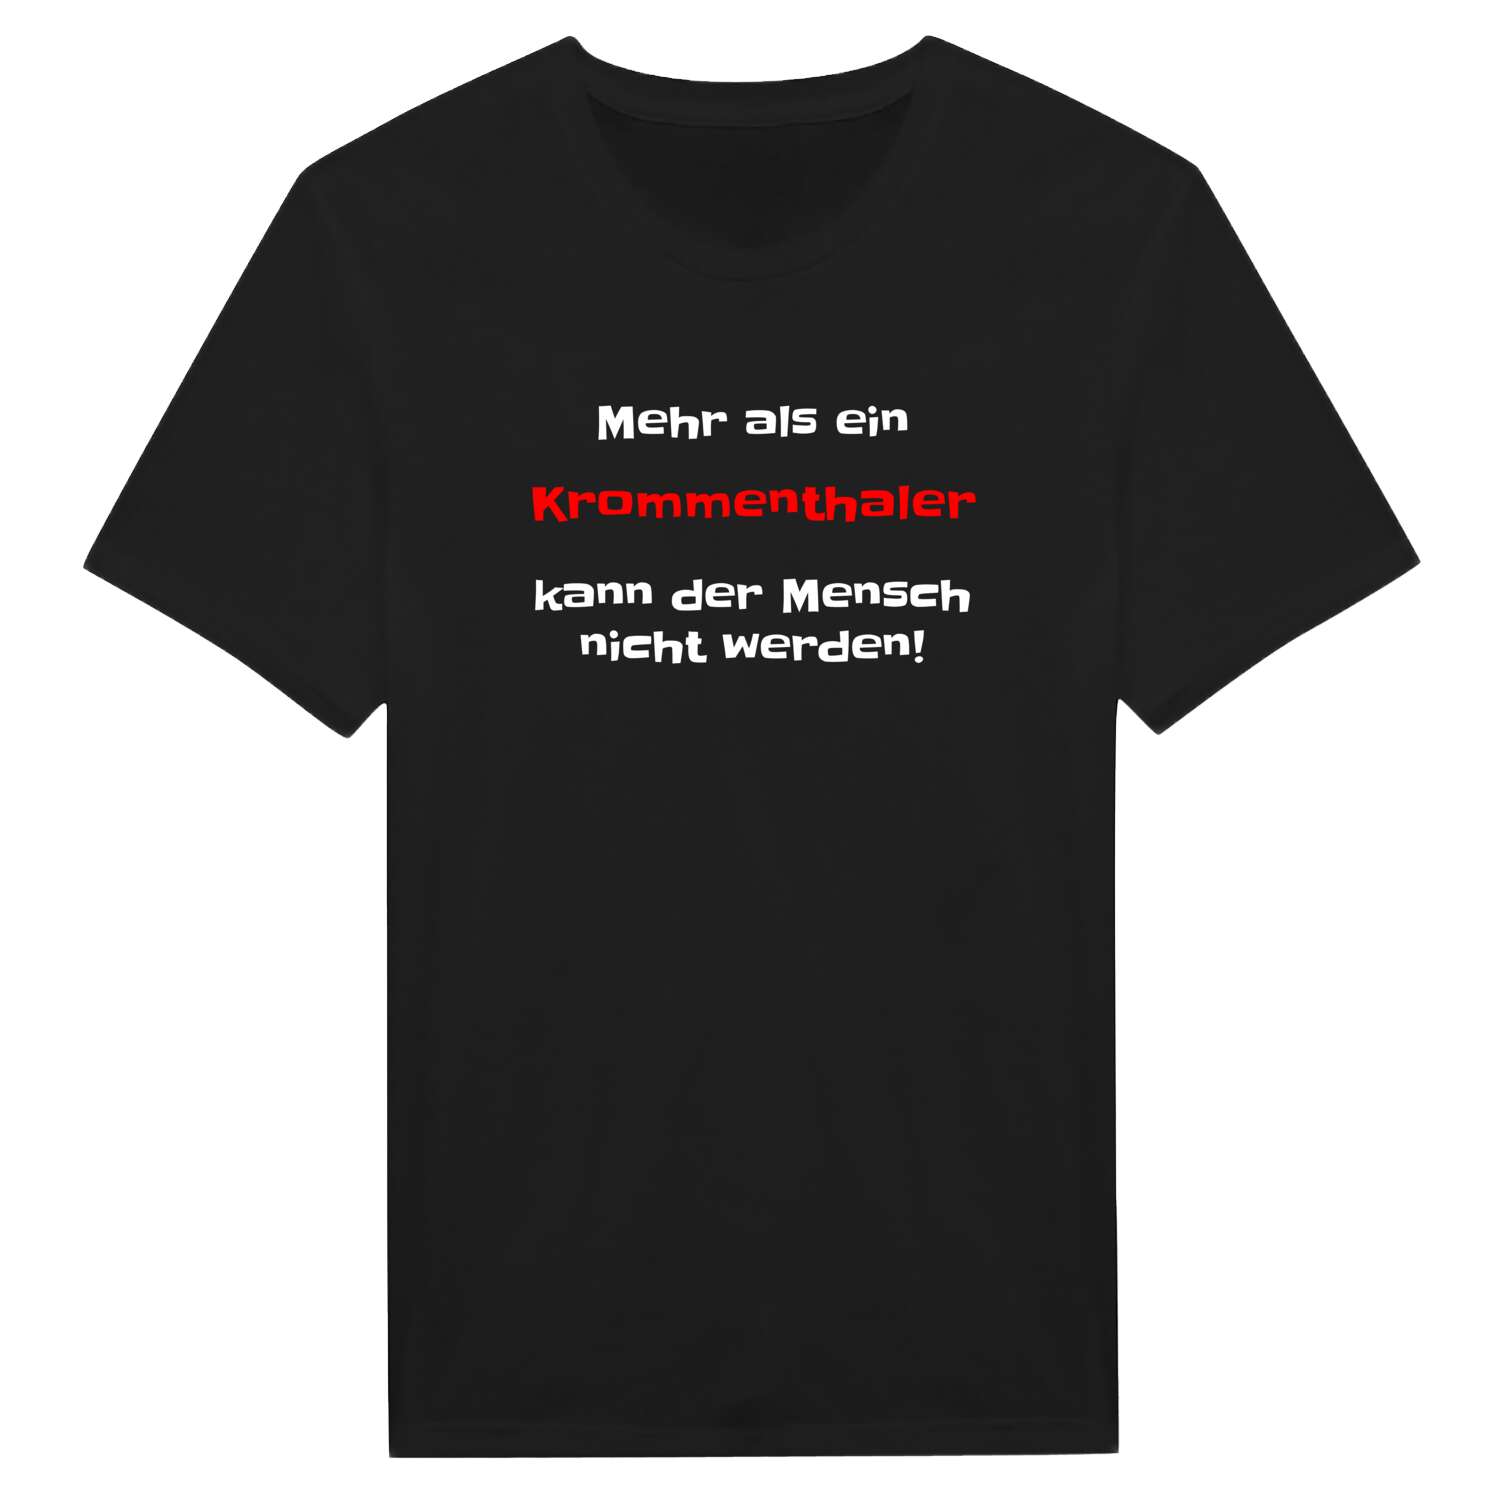 Krommenthal T-Shirt »Mehr als ein«